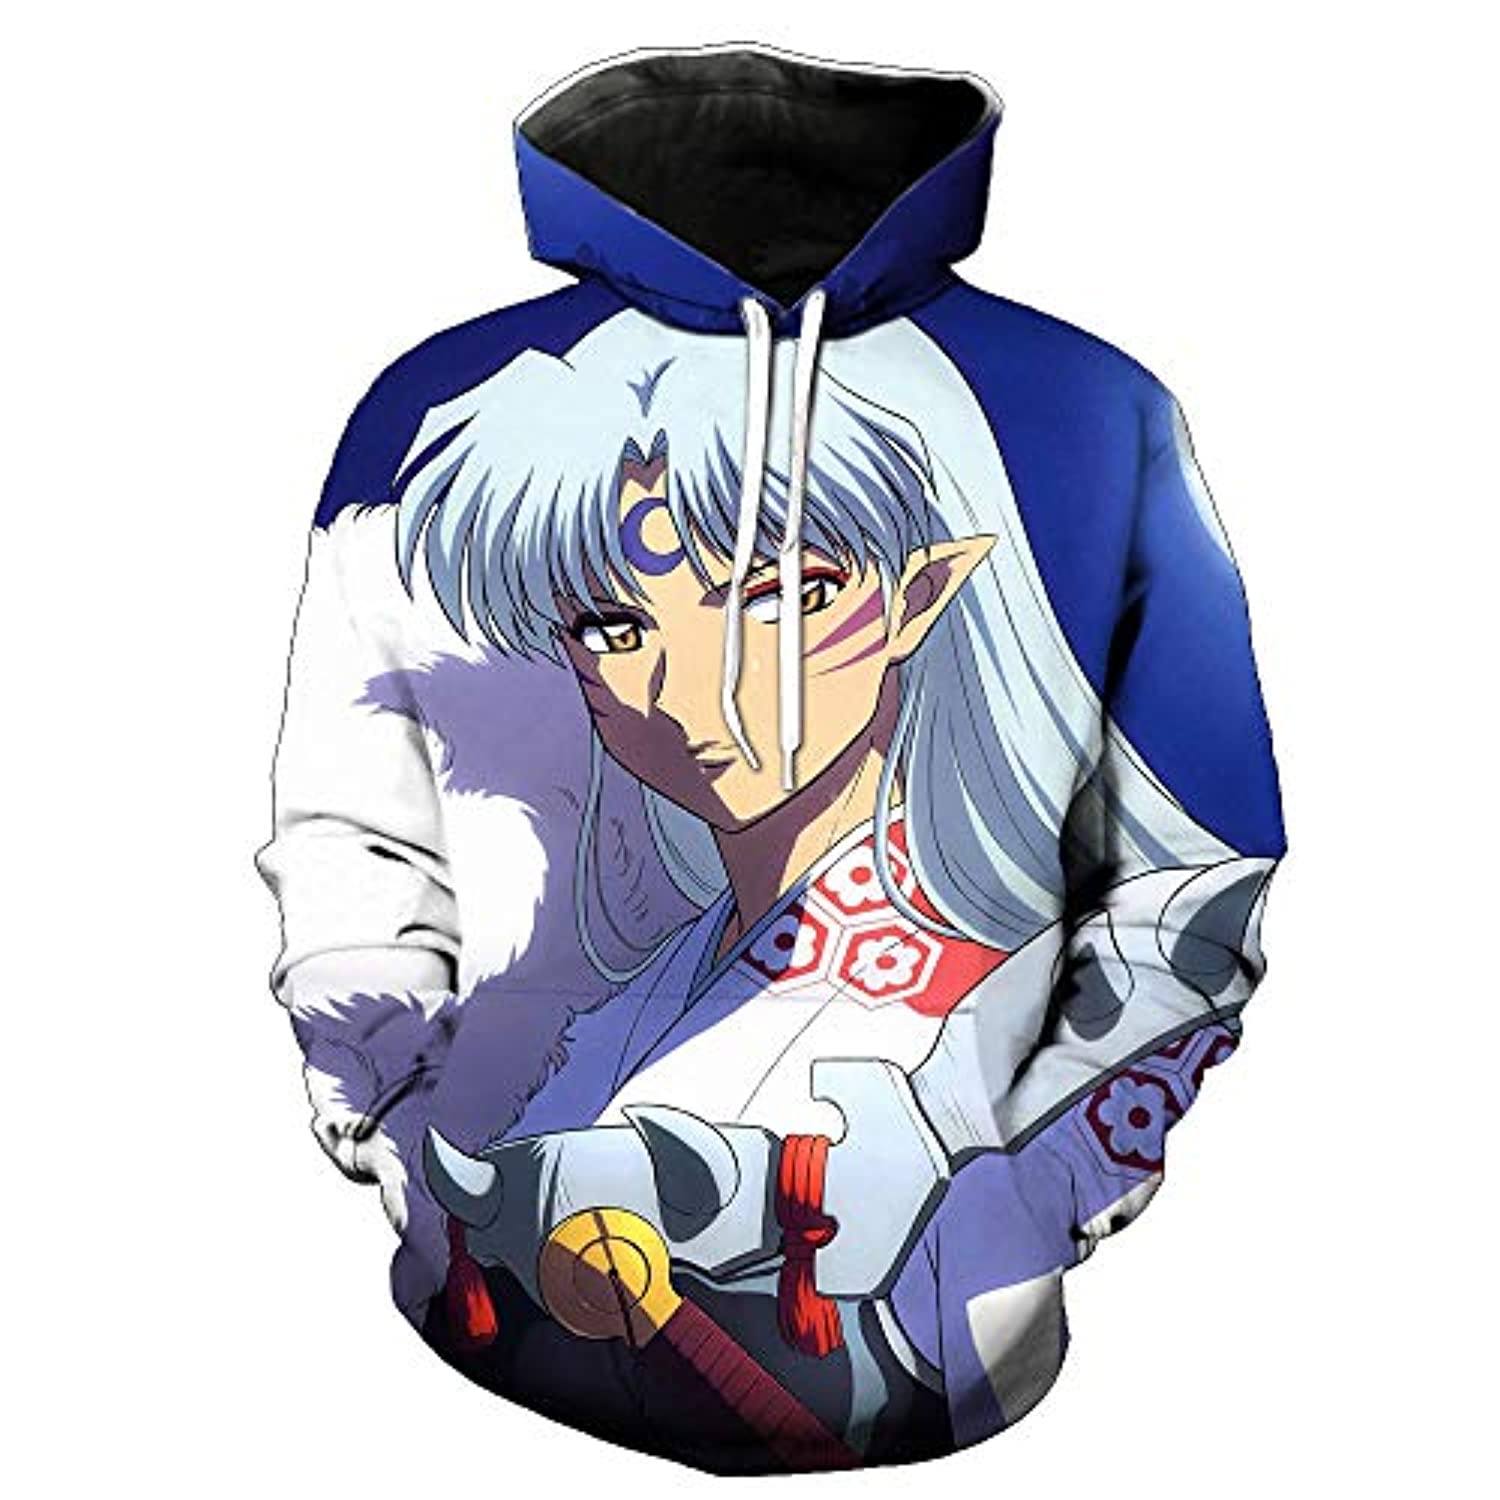 Inuyasha Sesshomaru Anime 3D Print Mens Fashion Hoodies & Sweatshirts